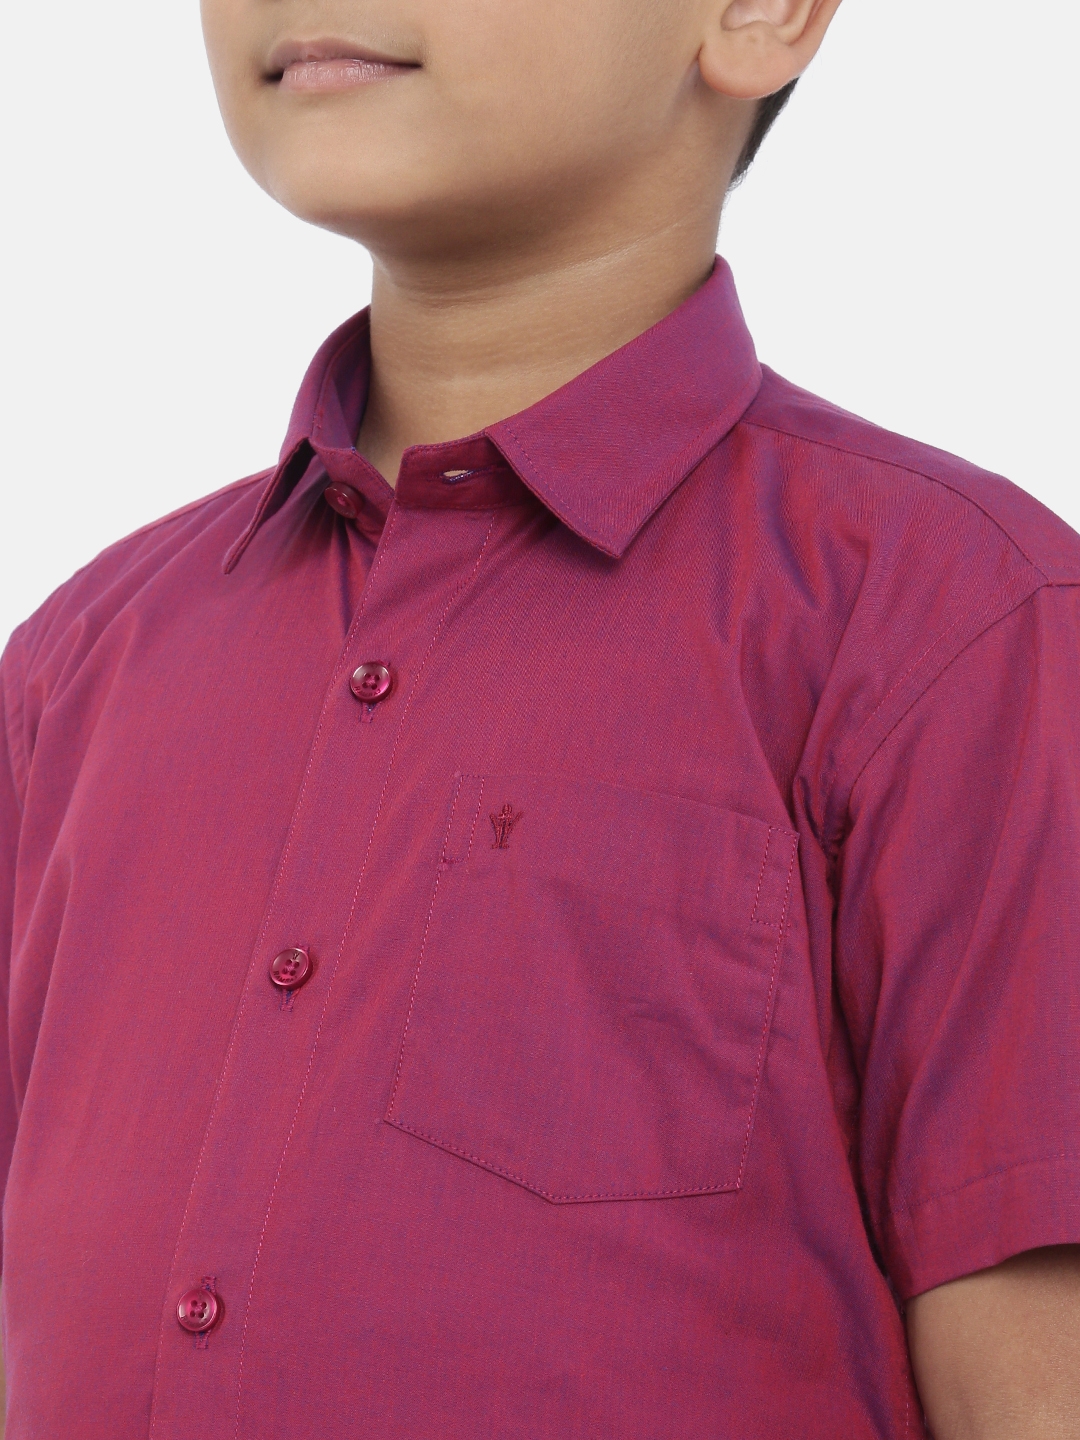 Ramraj Cotton | Ramraj Boys Pink Solid Shirt with White Dhoti 2